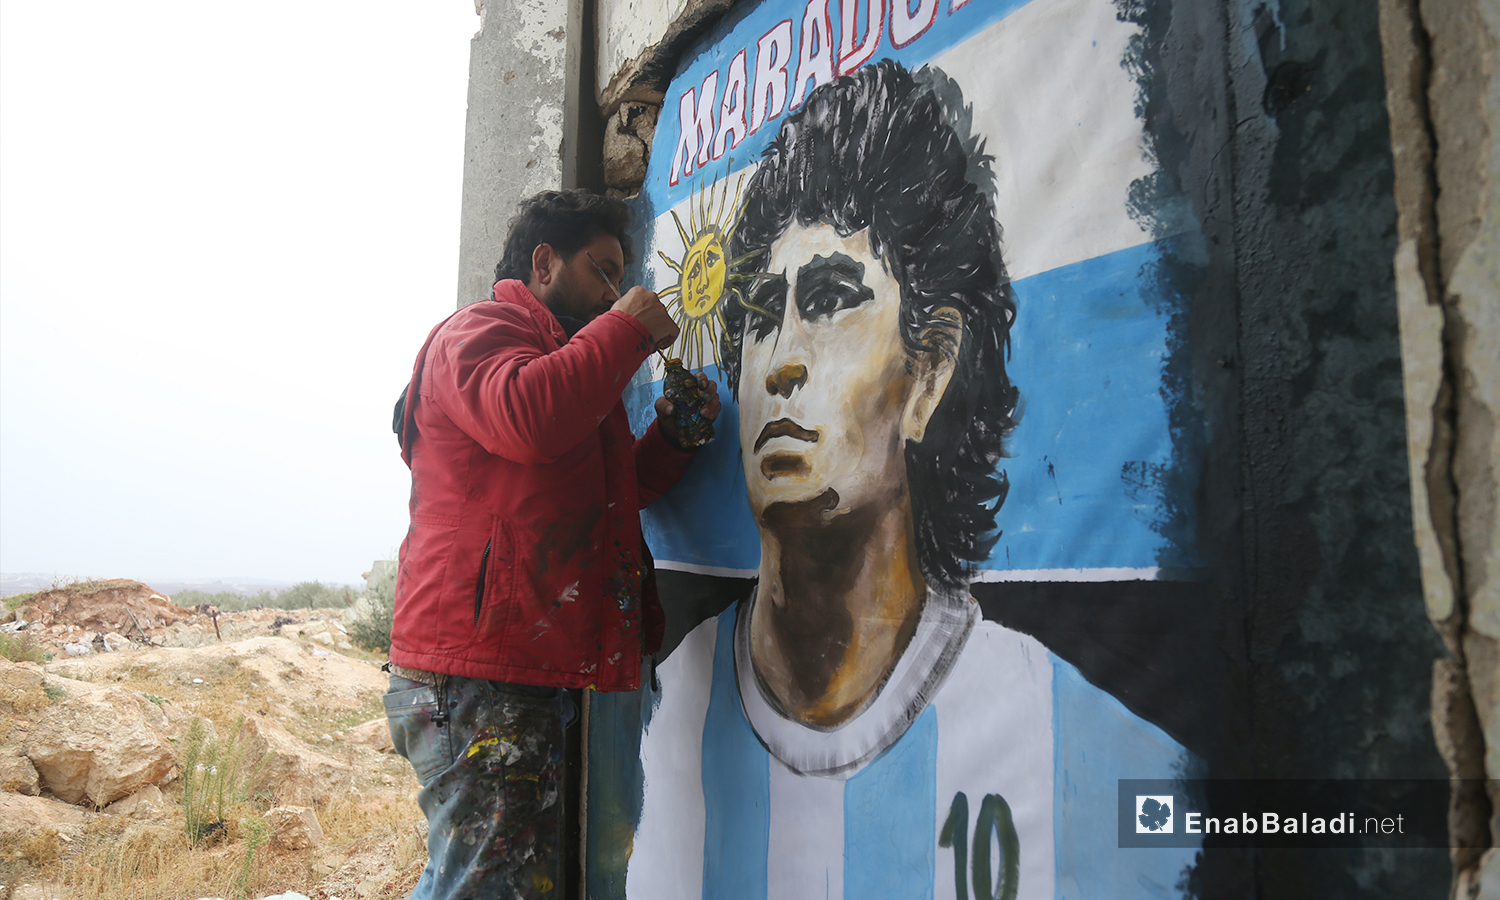 تضمنت الجدارية التي رسمها عزيز الأسمر وجه لاعب كرة القدم دييغو مارادونا مع شعار بلاده - 26 تشرين الثاني 2020 (عنب بلدي/ يوسف غريبي)